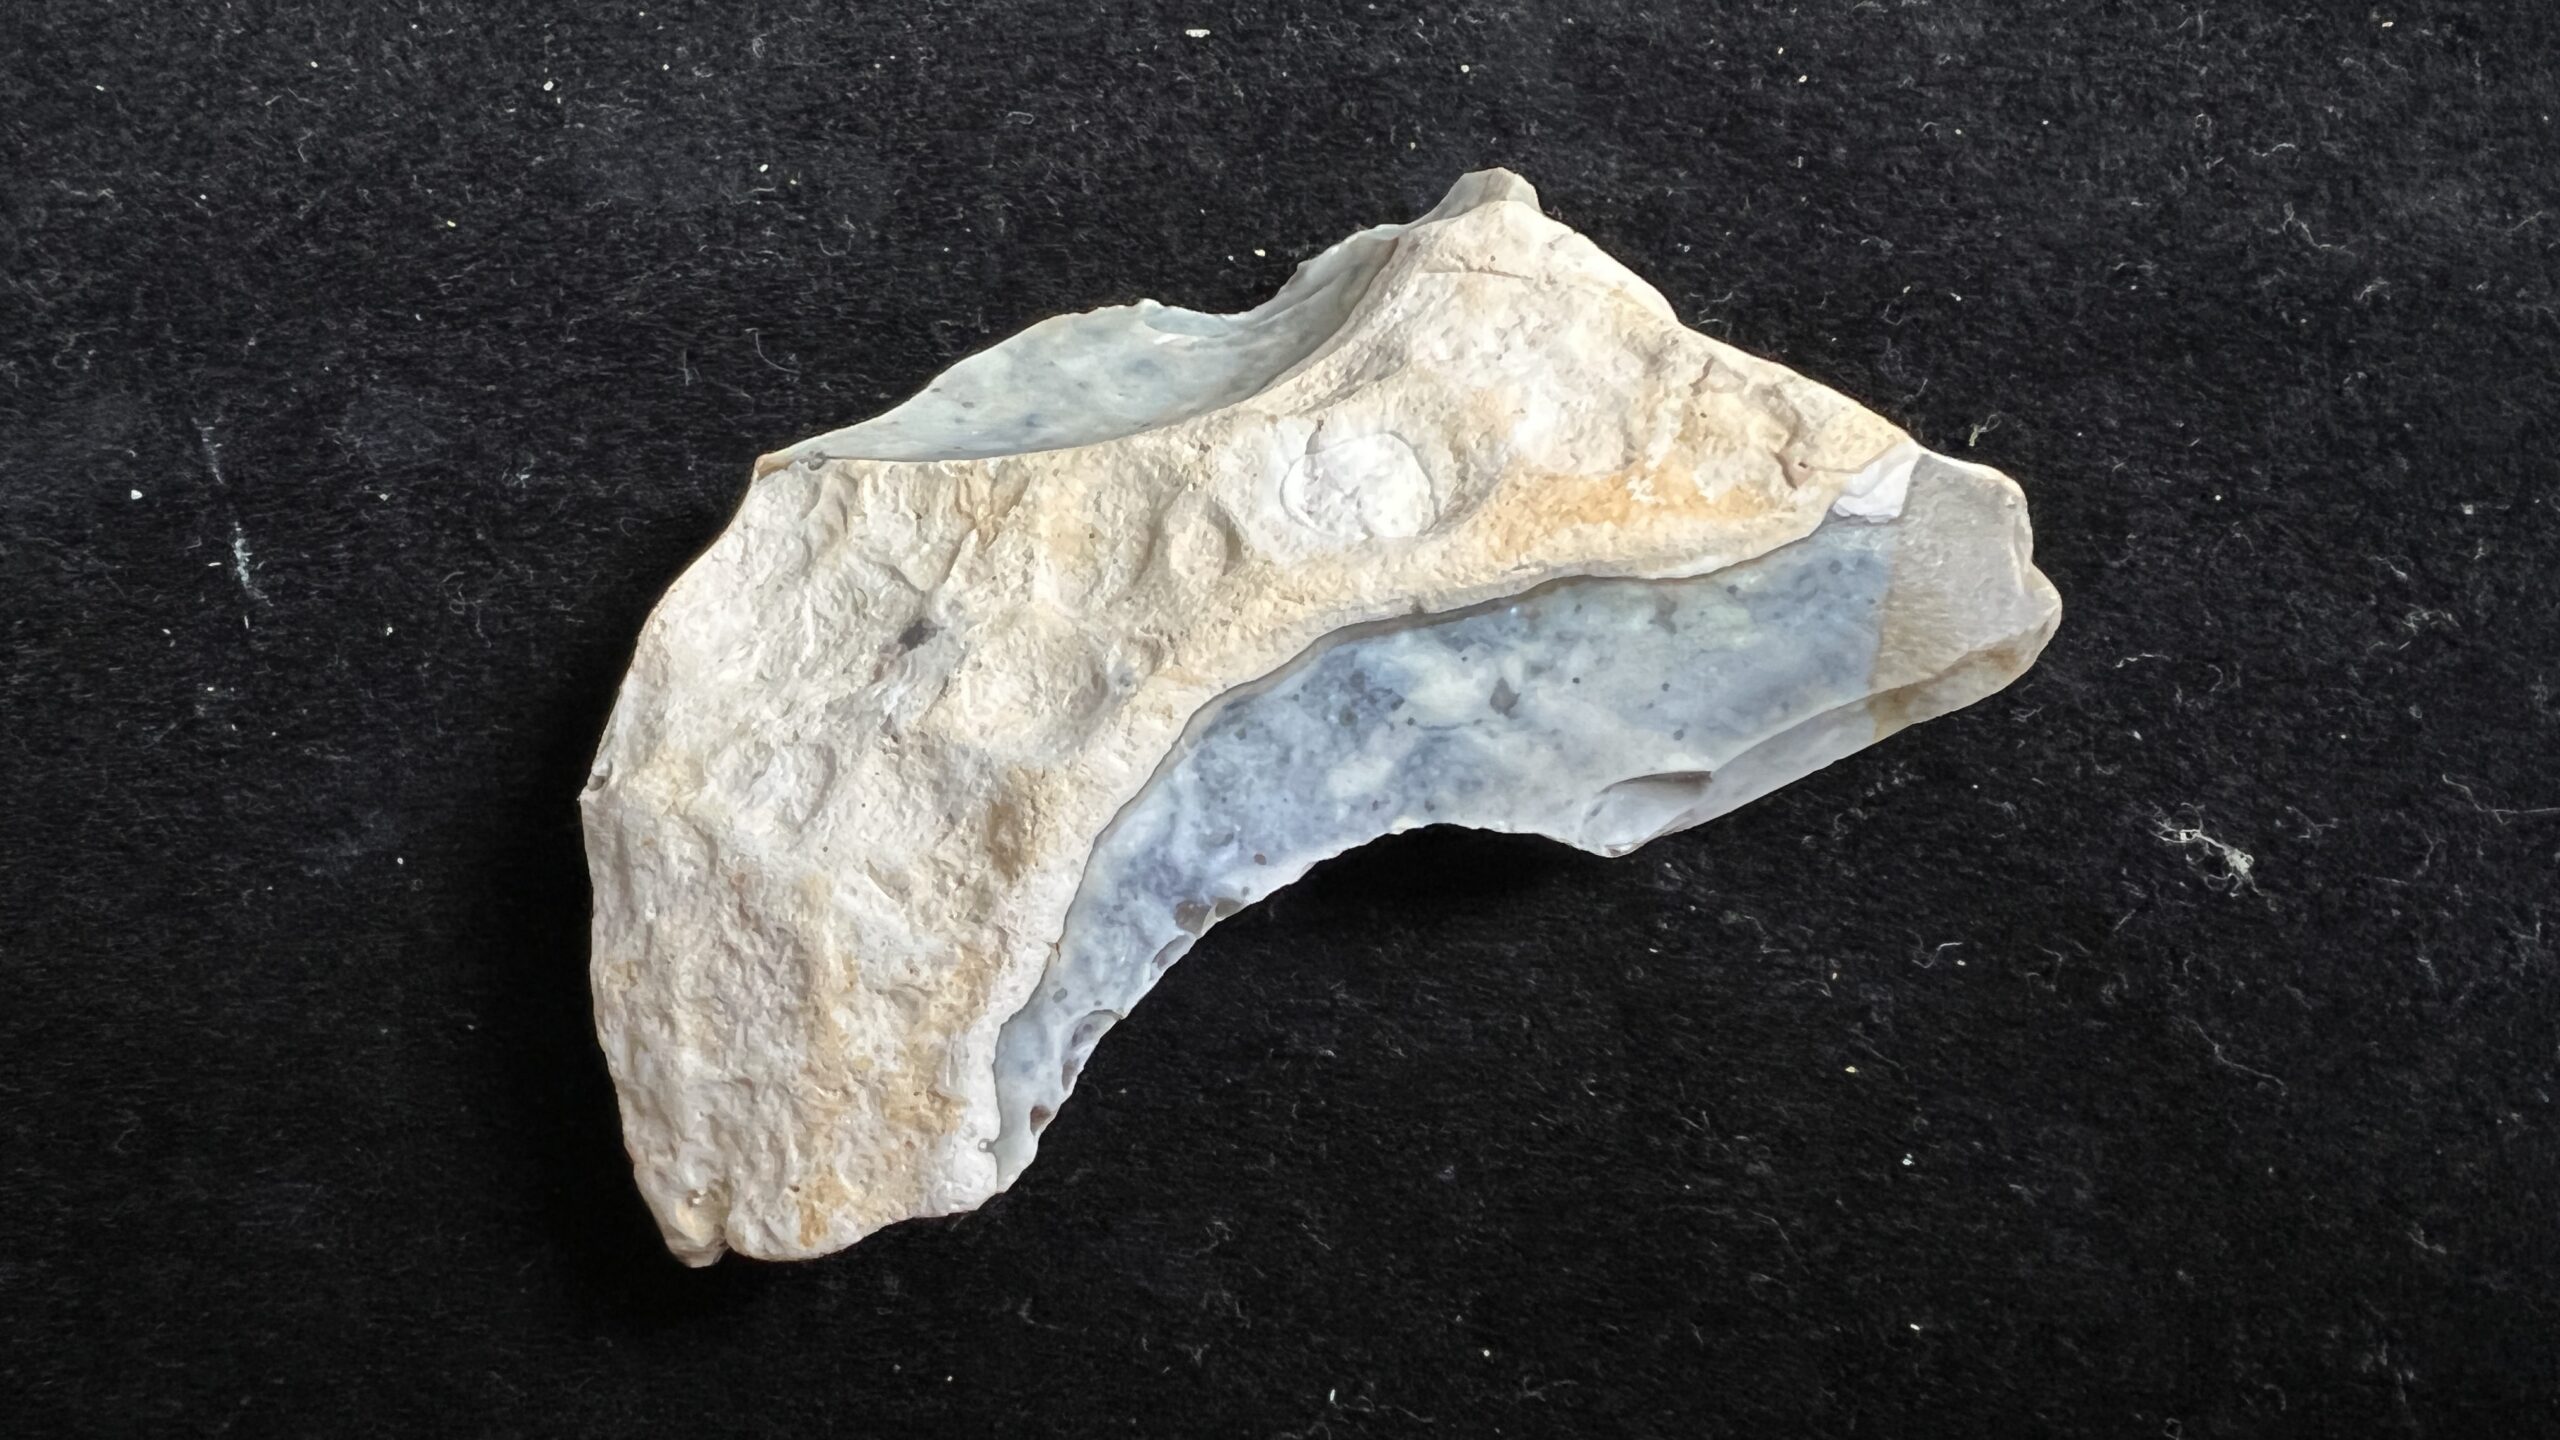 Palaeolithic blade